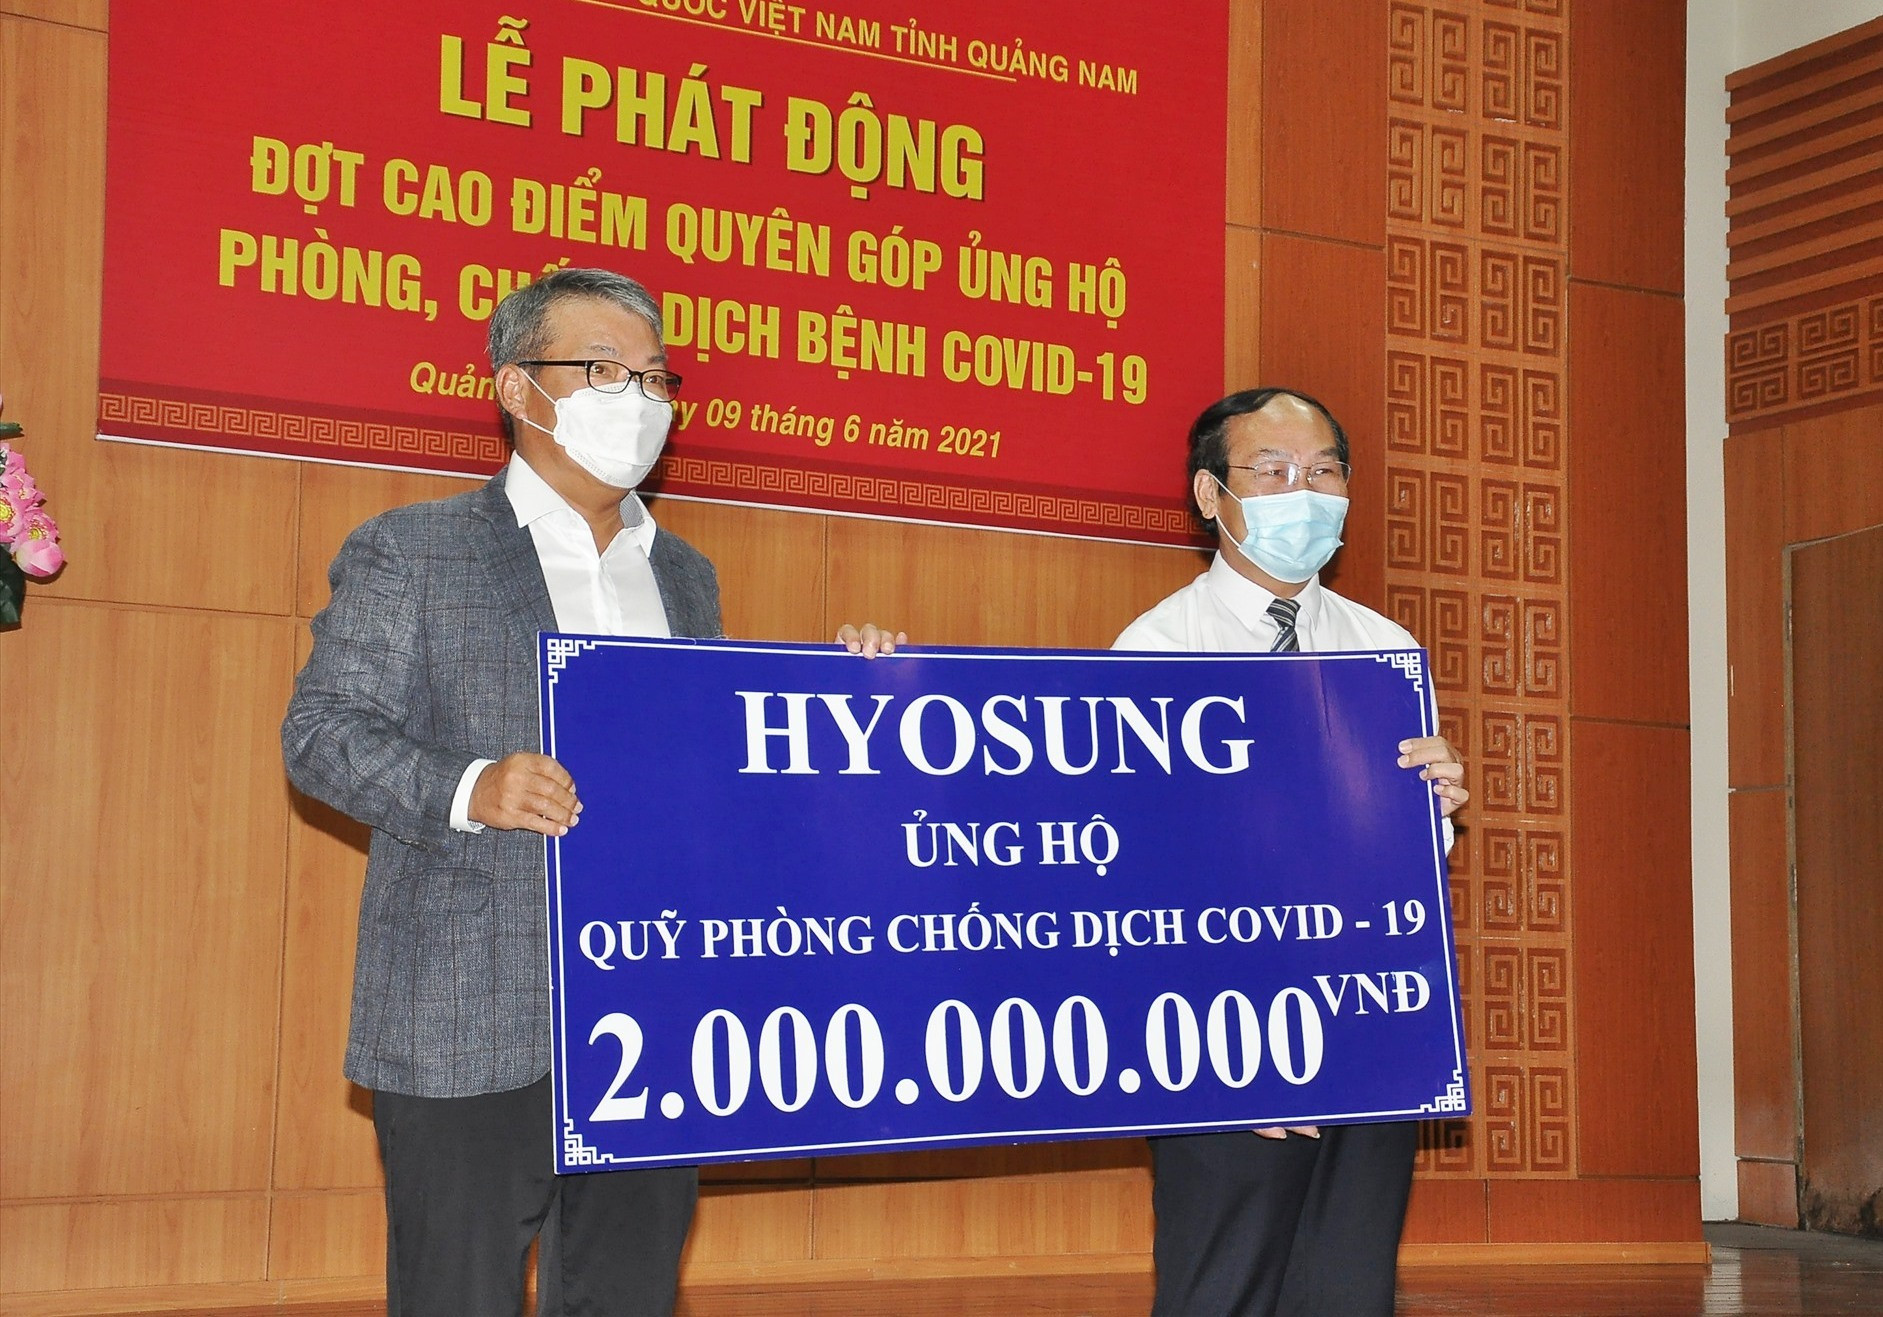 ập đoàn Hyosung ủng hộ 2 tỷ đồng cho Quỹ phòng chống dịch bệnh Covid-19 Quảng Nam. Ảnh: VINH ANH